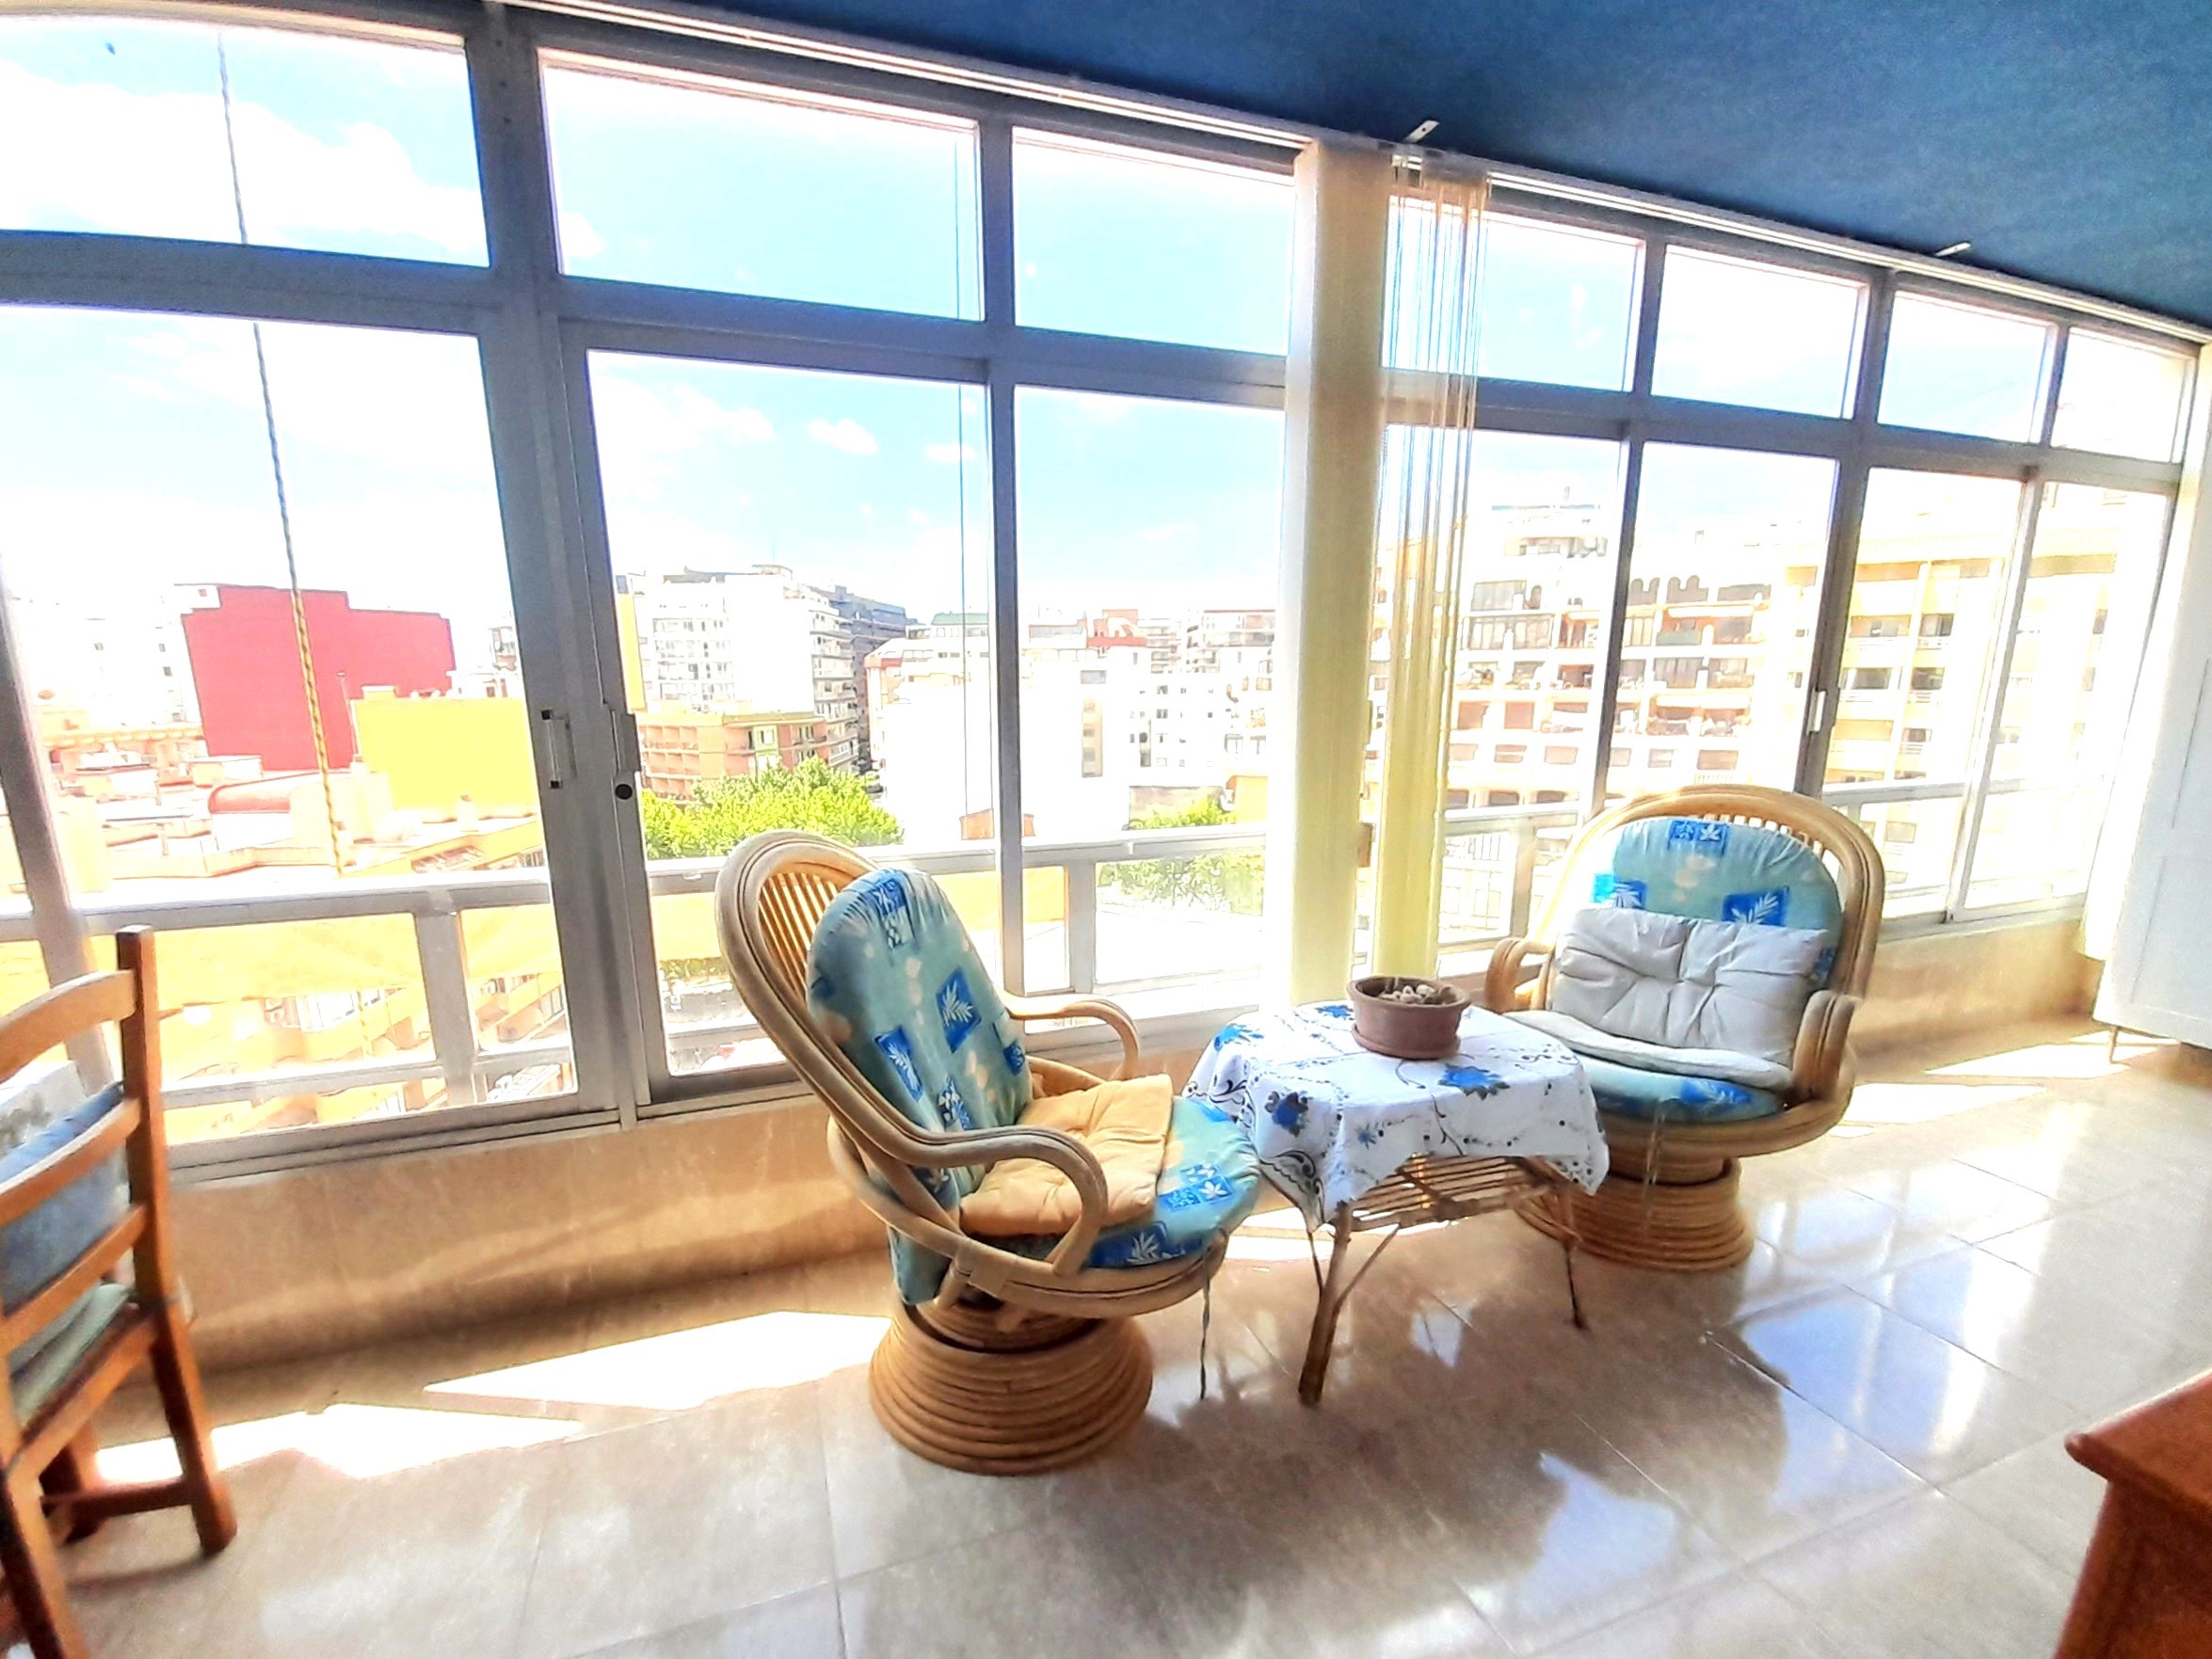 Apartamento en venta, con 2 dormitorios y 2 baños, en Apolo IV en el centro de Calpe. Cerca de la playa. Orientación sur, vistas abiertas, amplia terraza.